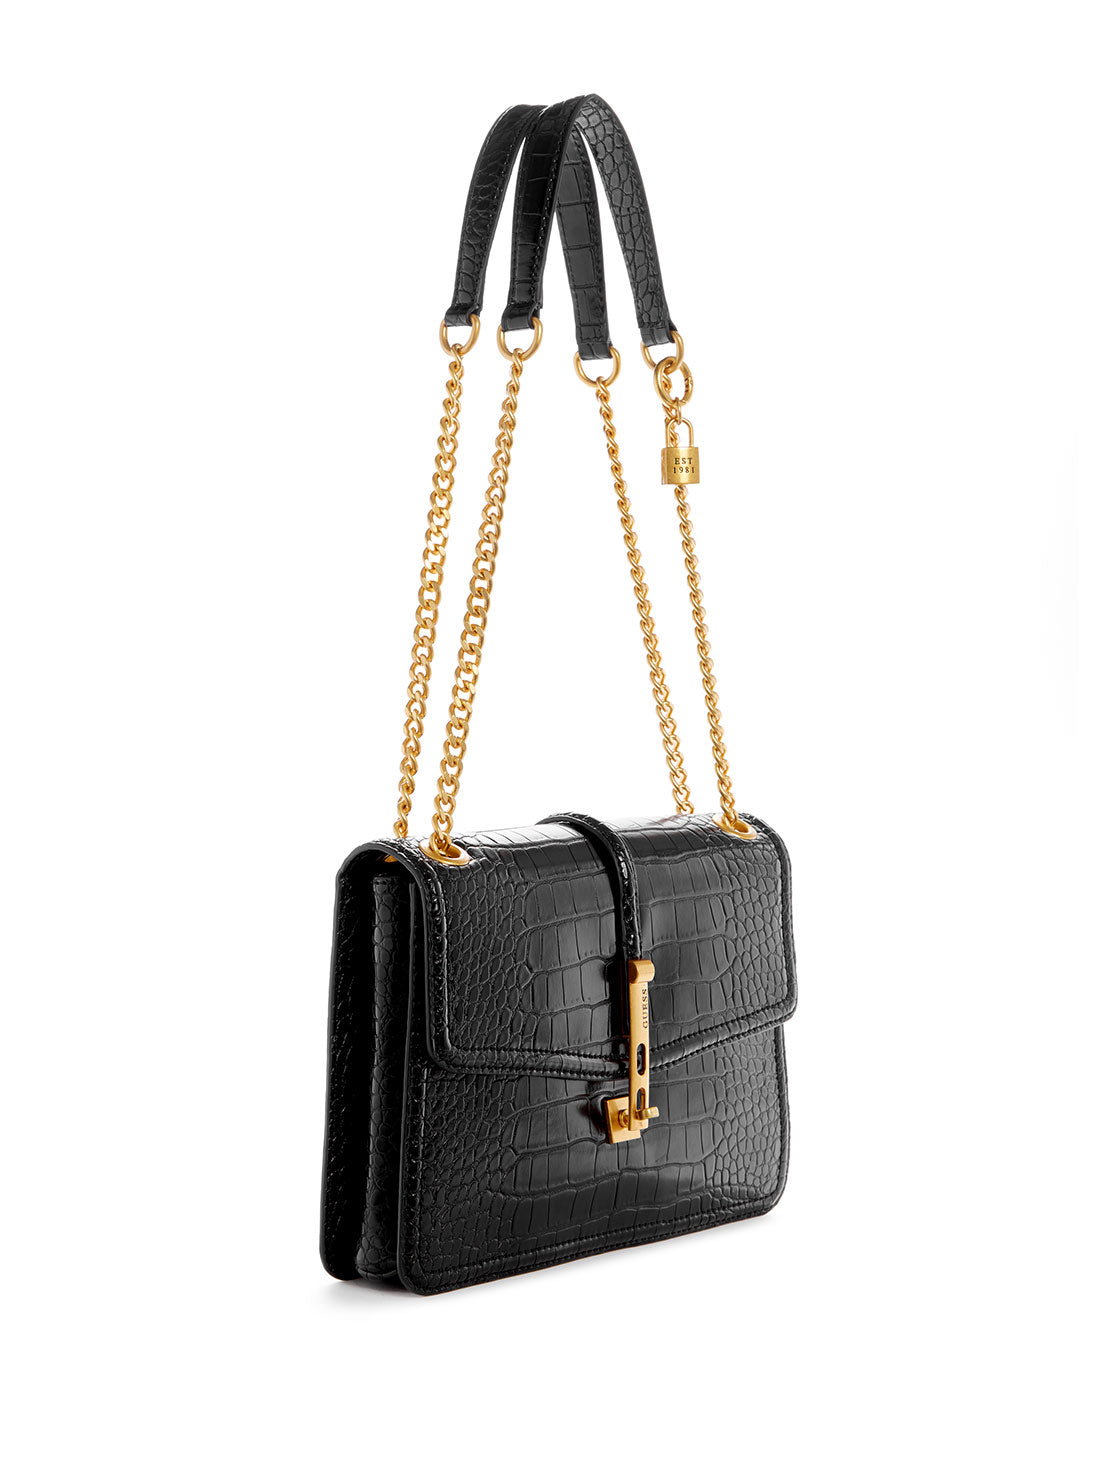 Women's Crossbody Bags | Sling Bags for Women – GUESS